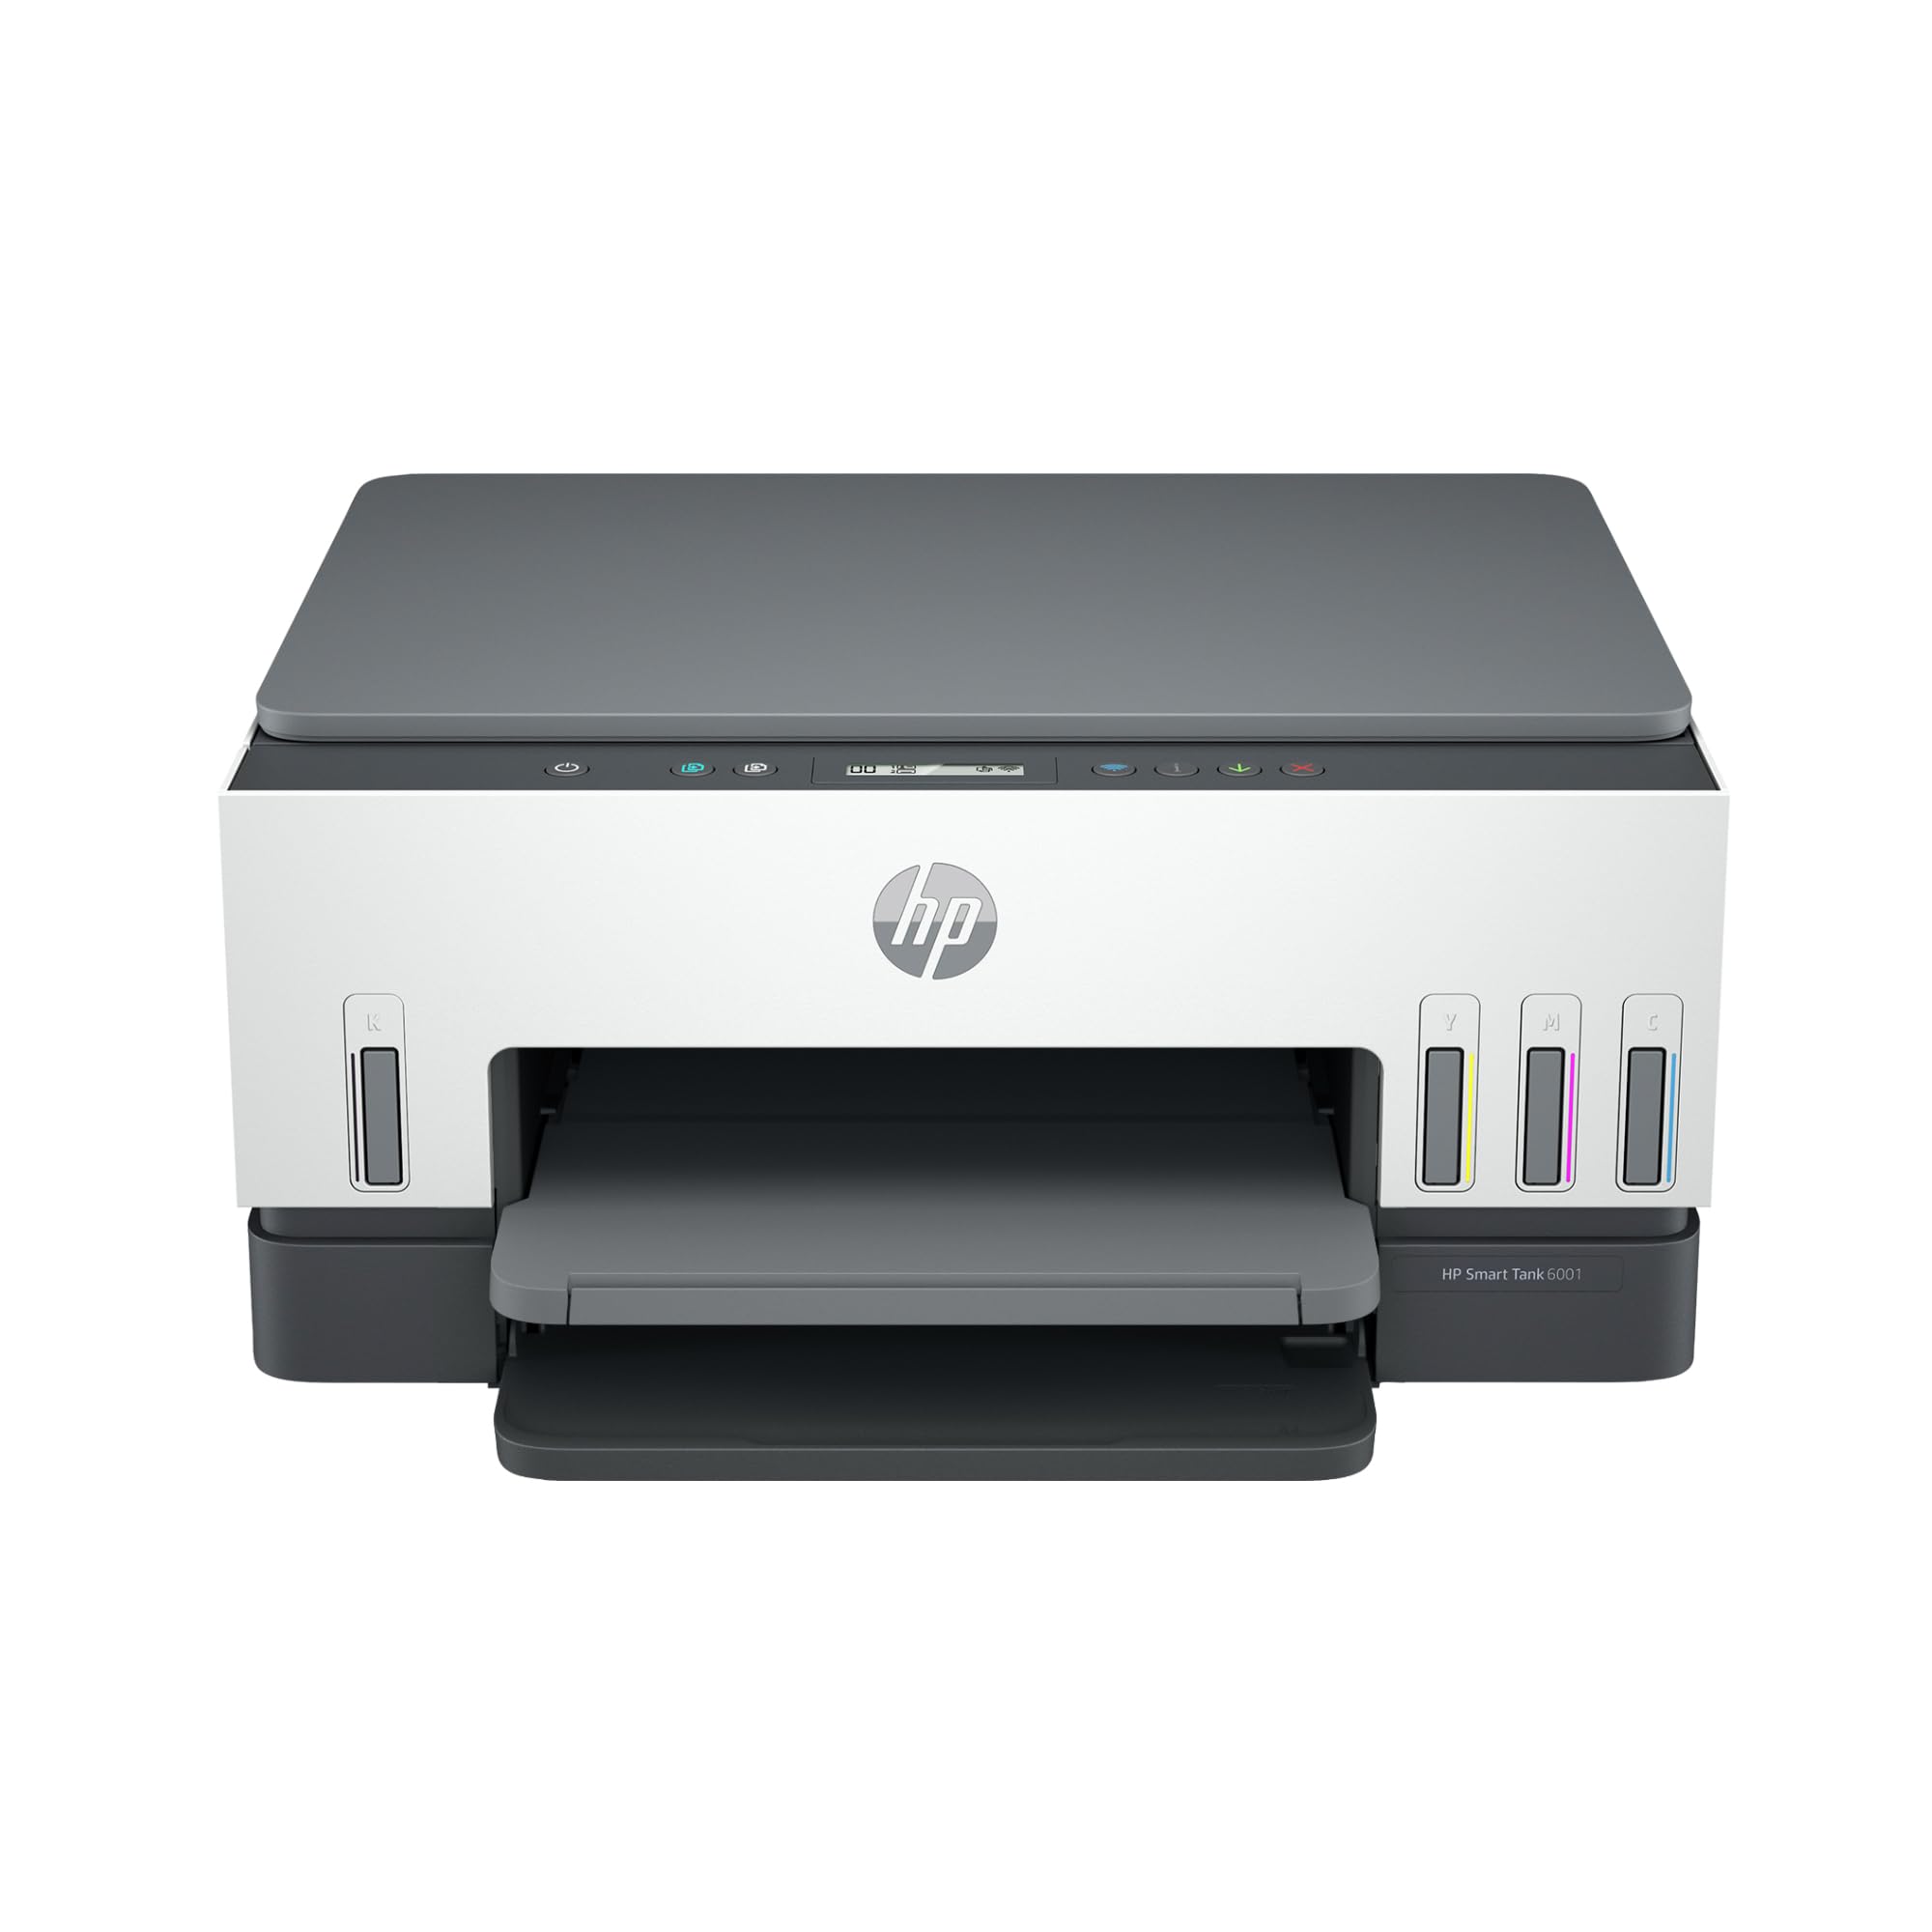 HP Smart Tank 6001 无线无墨盒一体式打印机，这款墨盒打印机附带长达 2 年的墨水，可移动打印、扫描、复印 (2H0B9A)